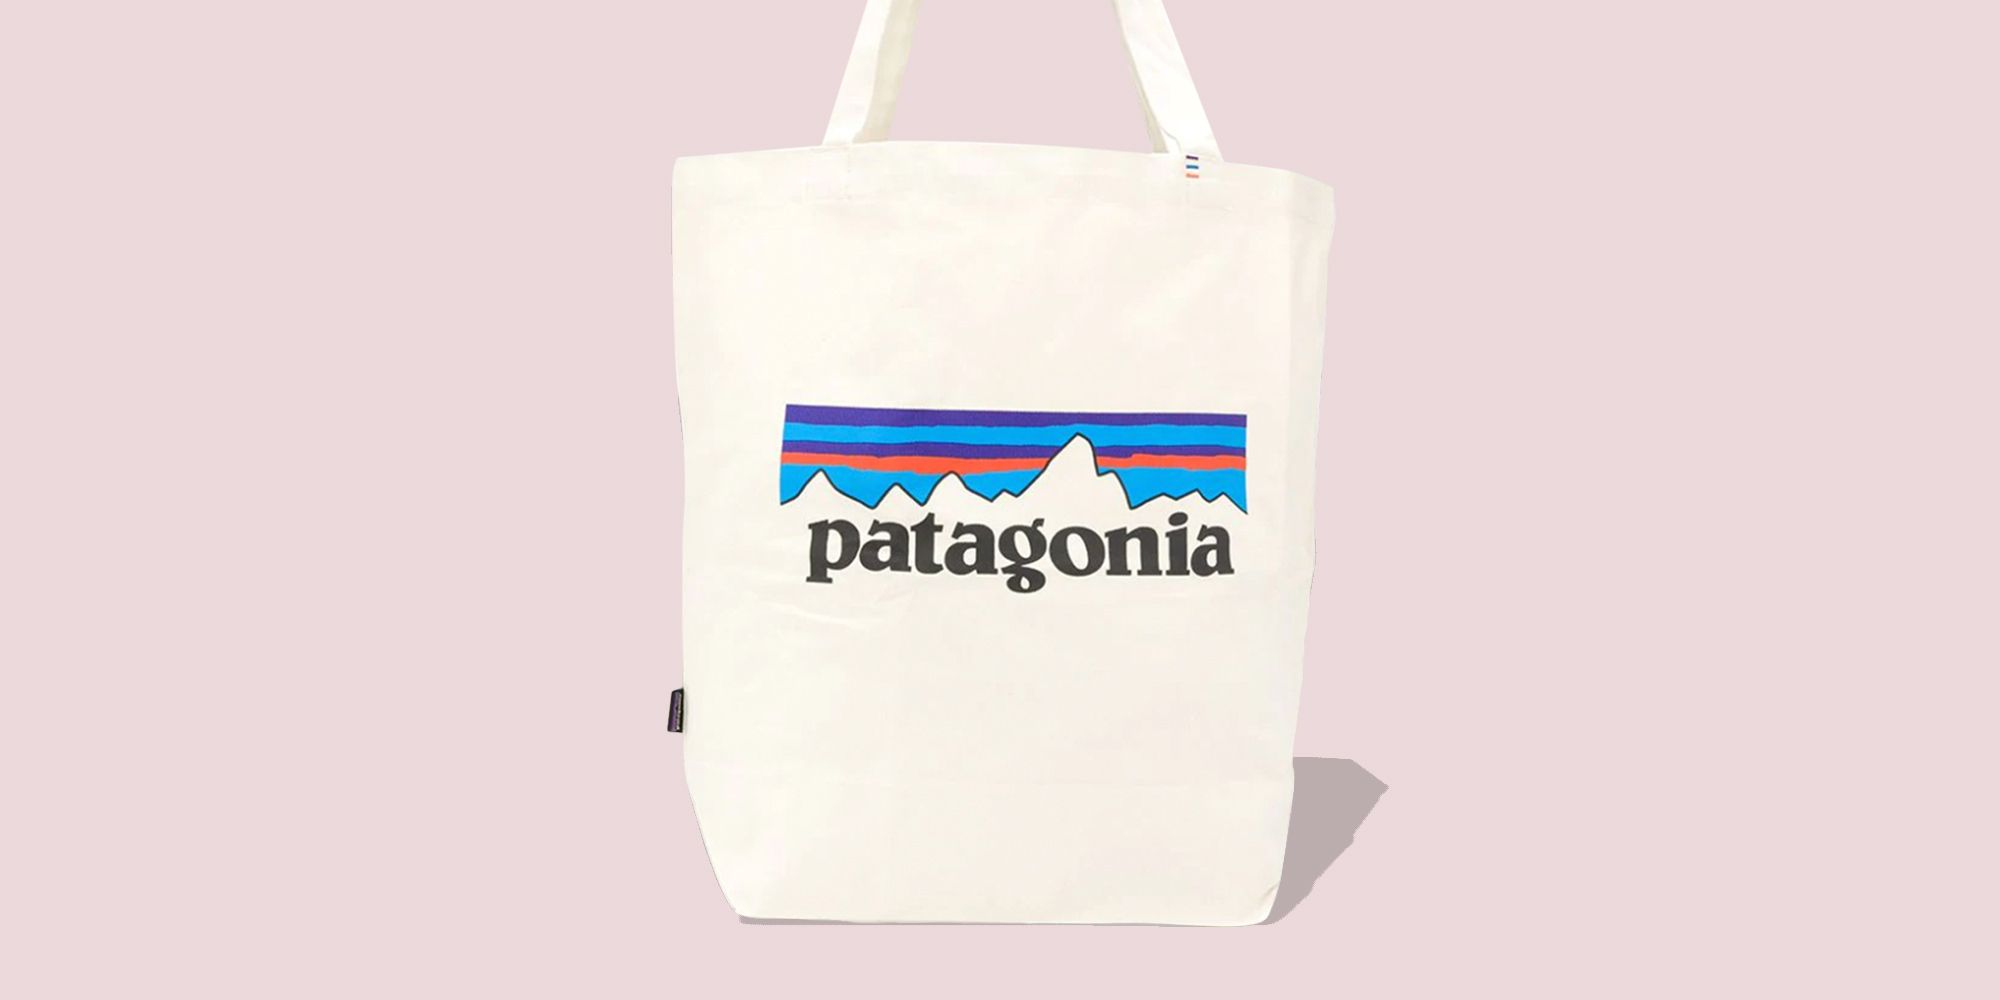 Support Your Local Famers Denim tote bag Boho  Bag Famers Market Denim Bag Eco Friendly Shoulder Bag Denim Shoulder Bag Eco Bag